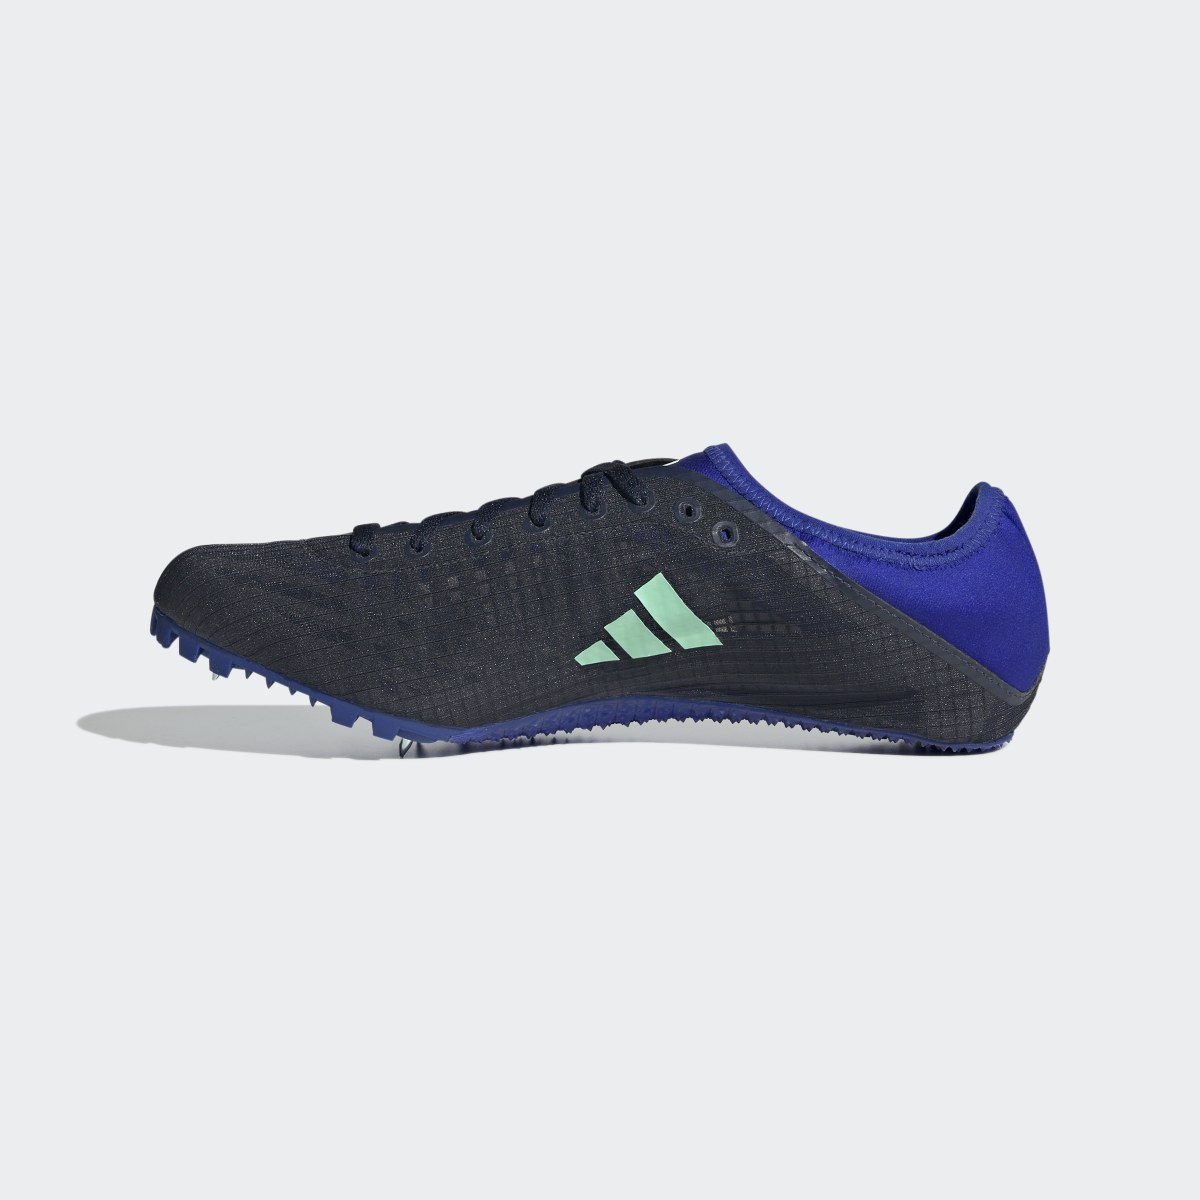 Adidas Sprintstar Spike-Schuh. 7